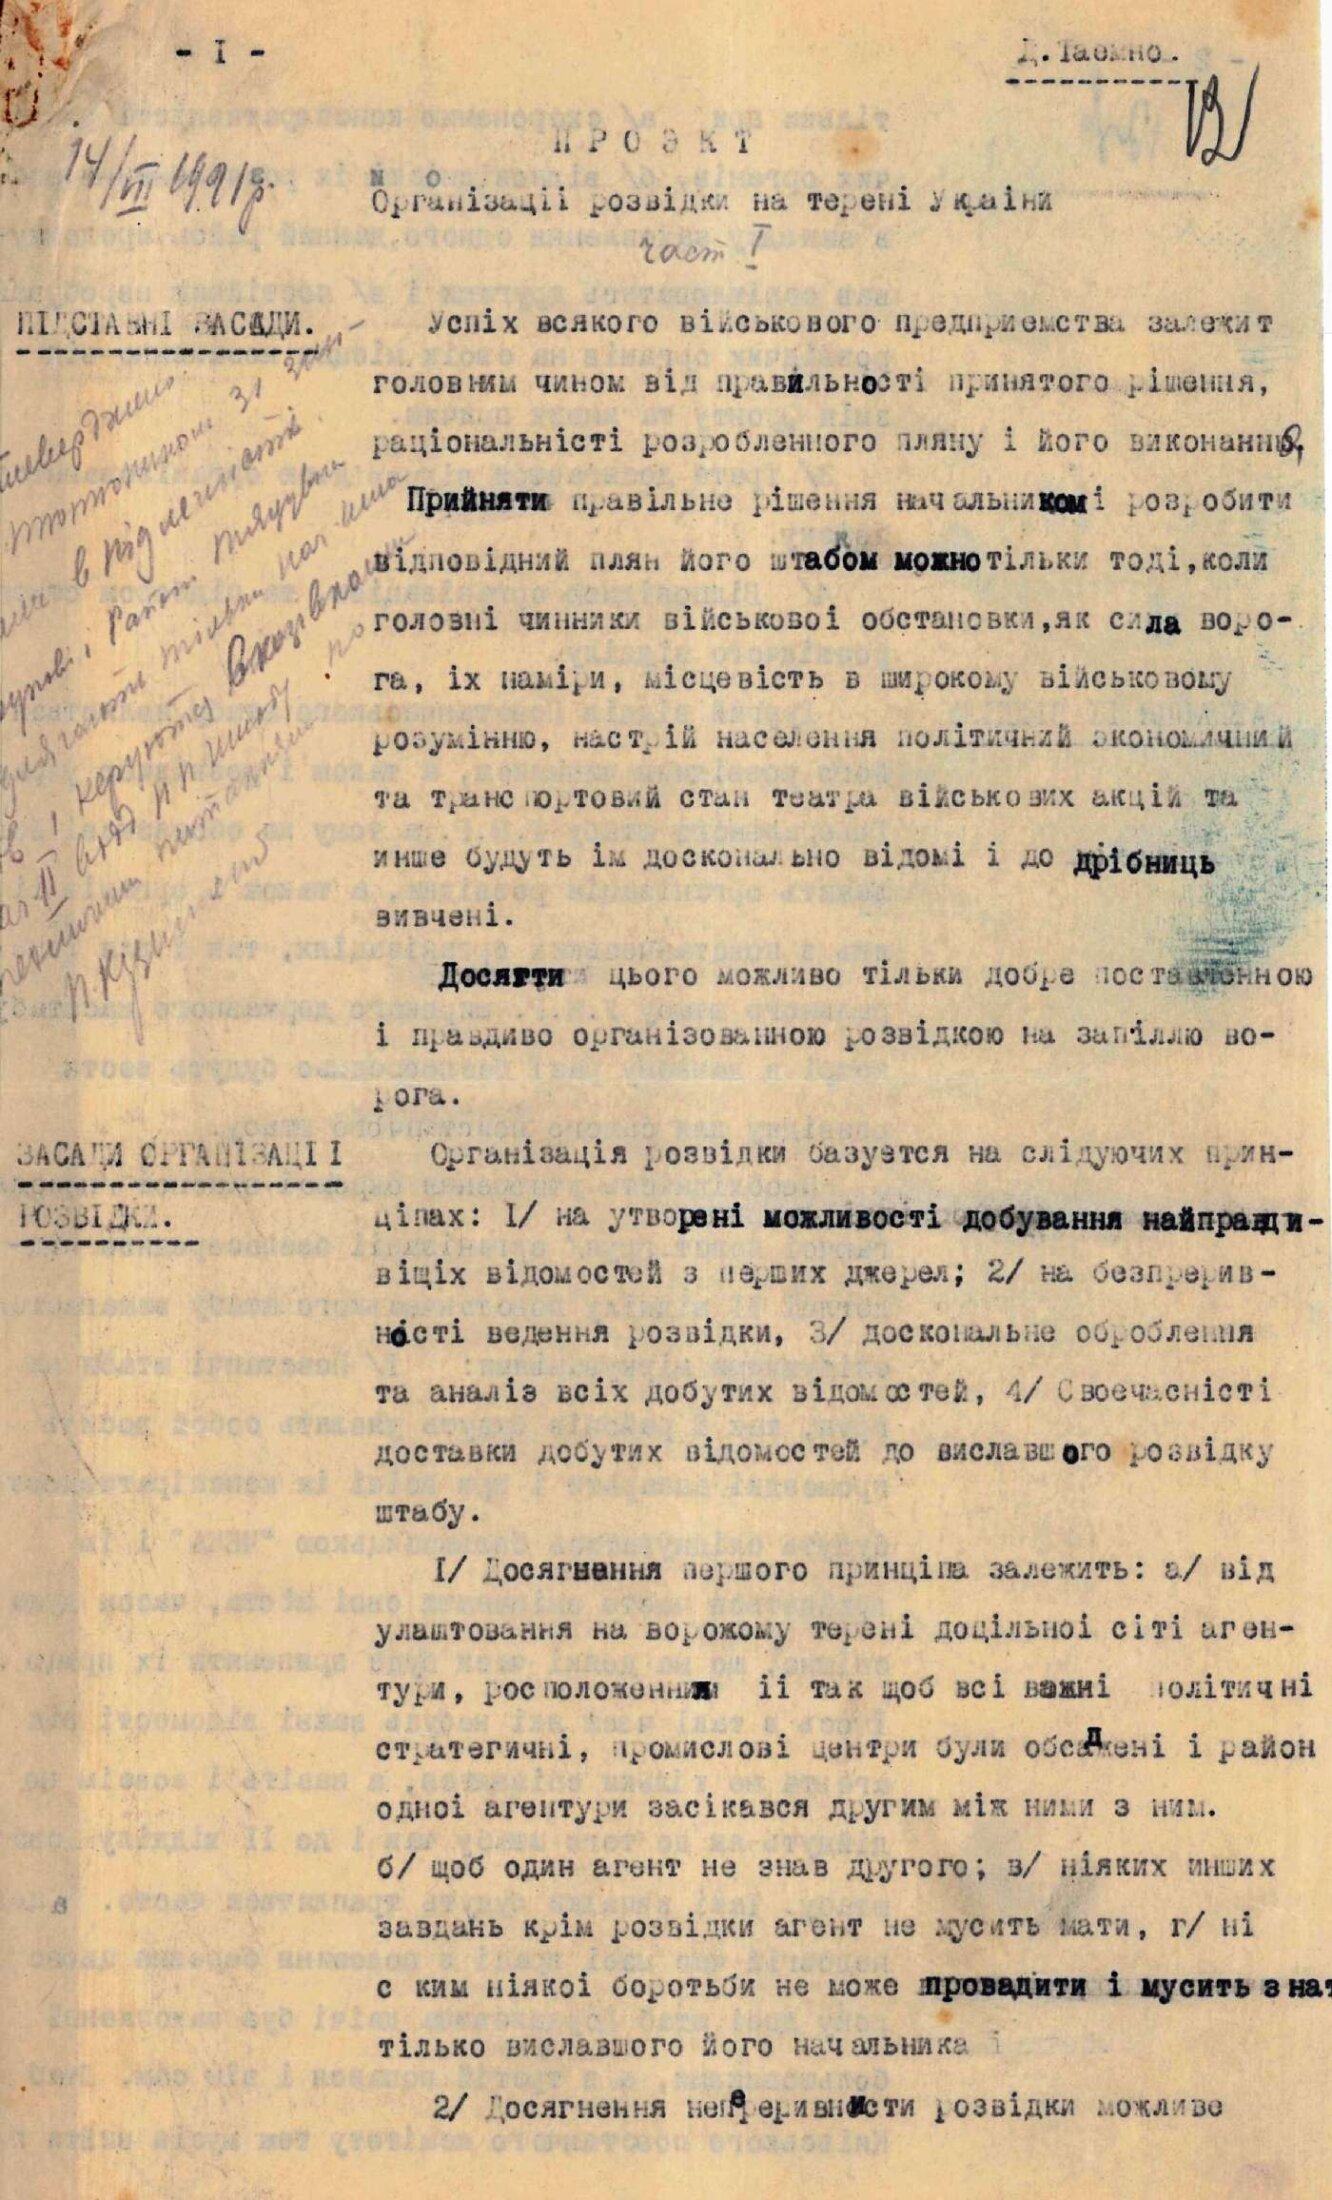 Проєкт Організації розвідки на терені України та план розташування розвідувальних органів по районах. Не пізніше 14 липня 1921 р.